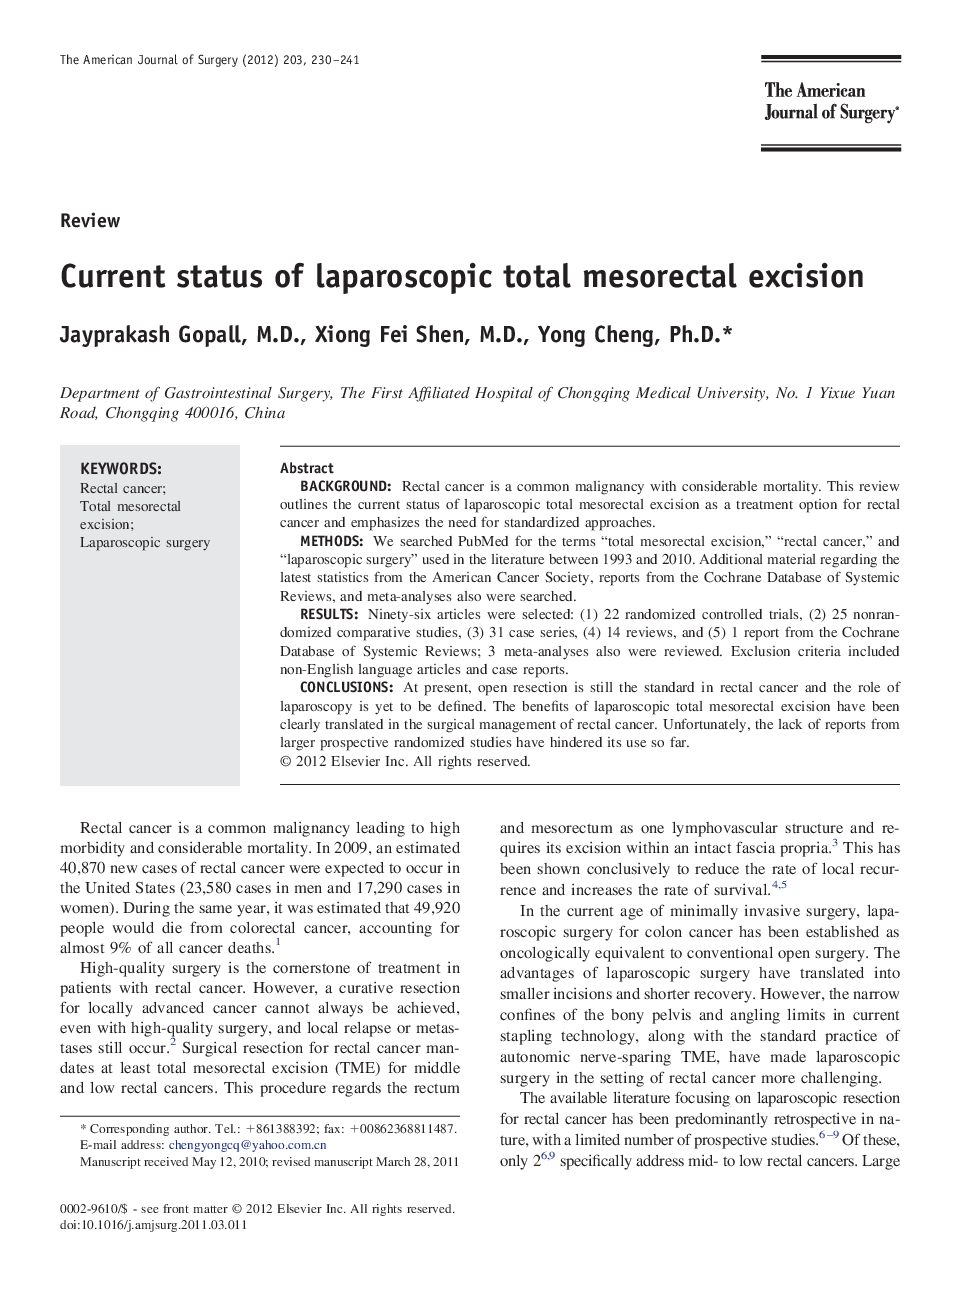 Current status of laparoscopic total mesorectal excision